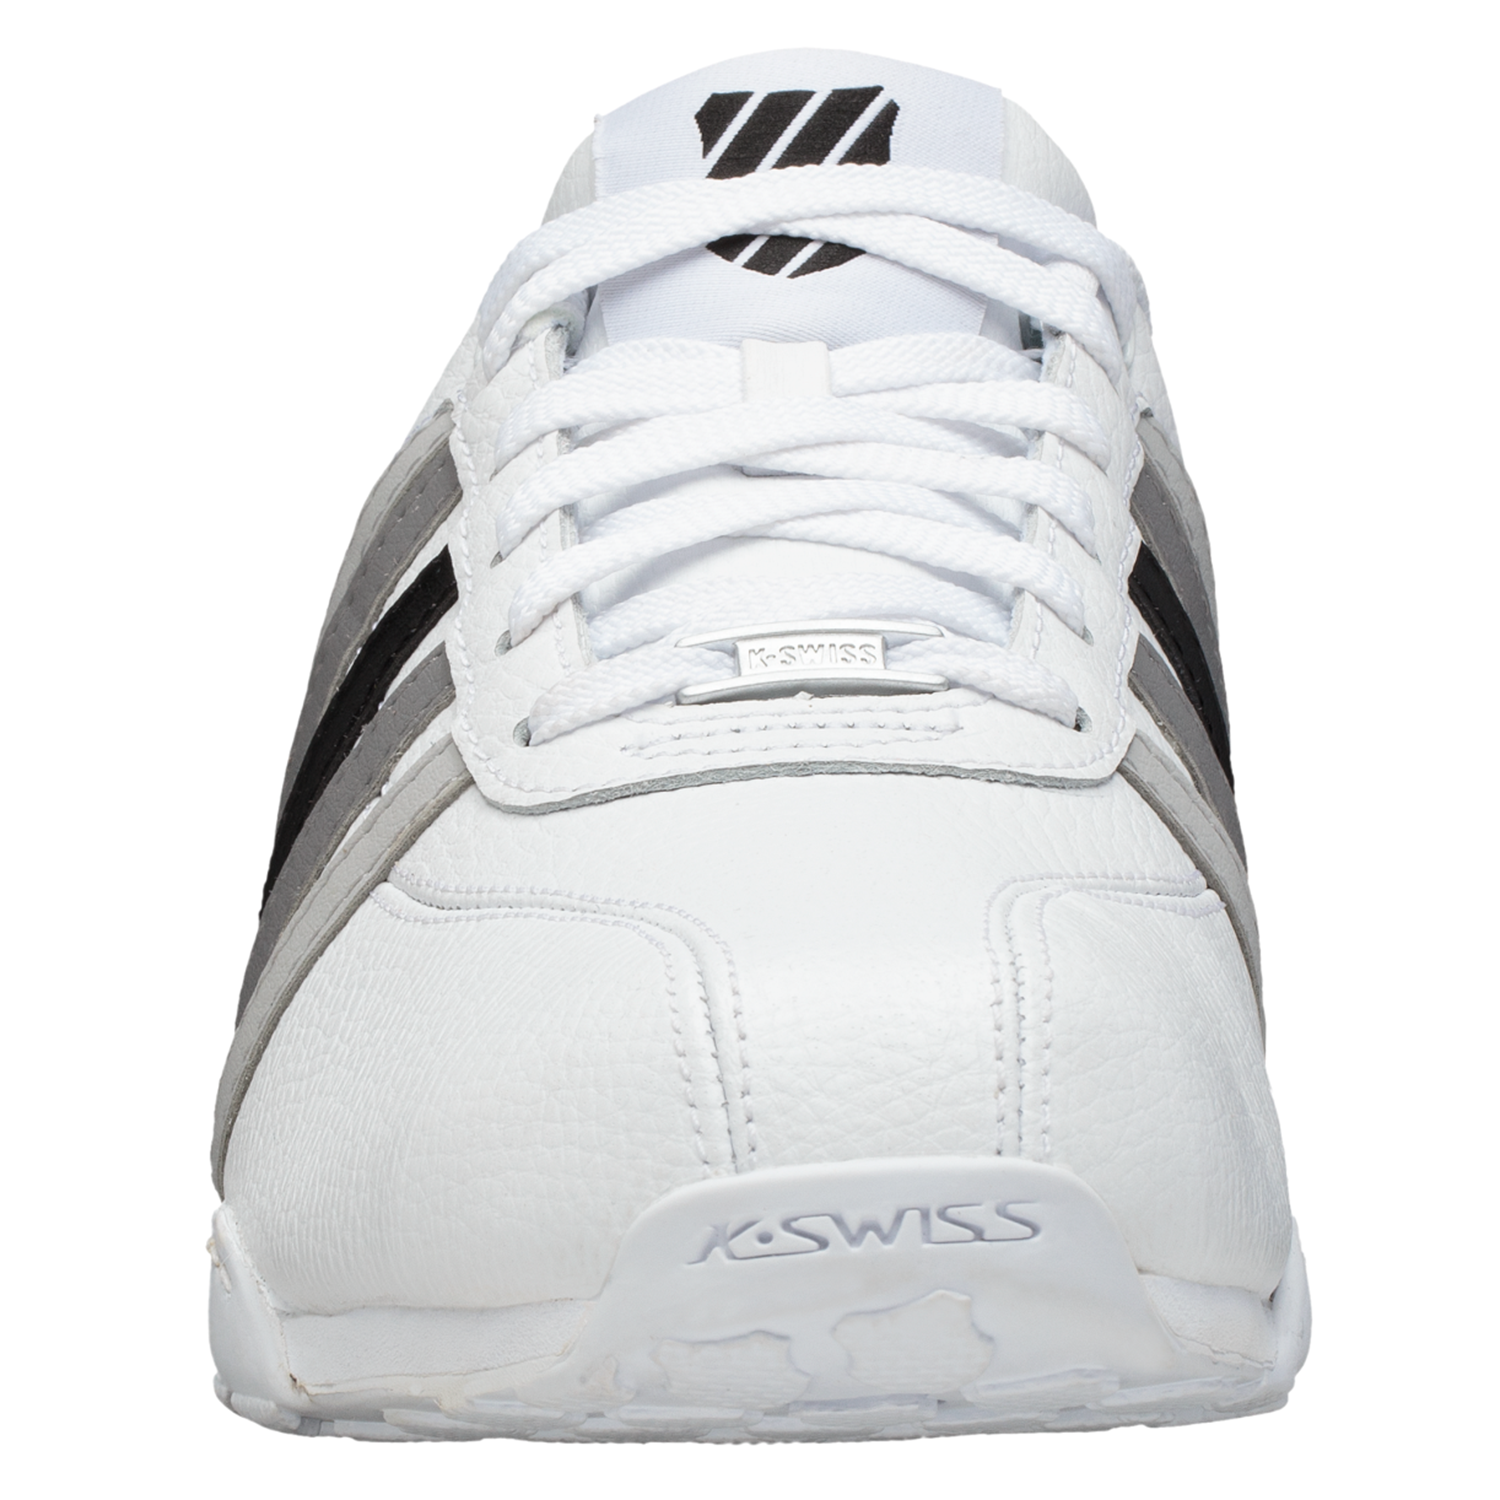 K-SWISS Arvee 1.5 Herren Sneaker Sportschuhe 02453-935-M Weiß / Grau